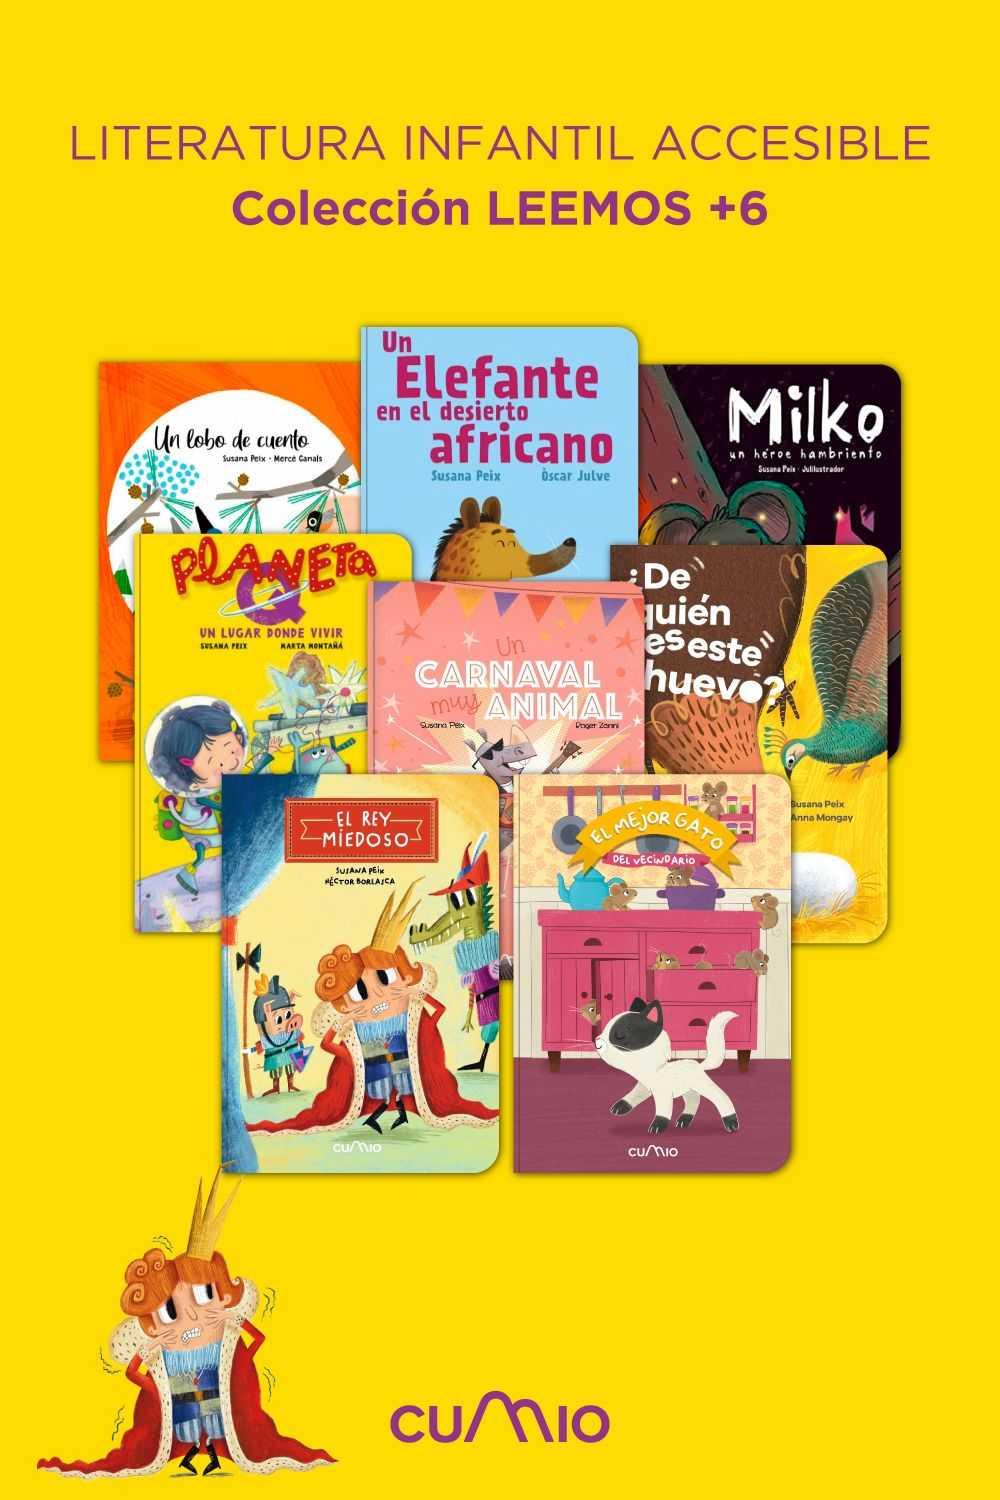 Ilustración con la colección de literatura infantil accesible de LIEMOS ( 6)